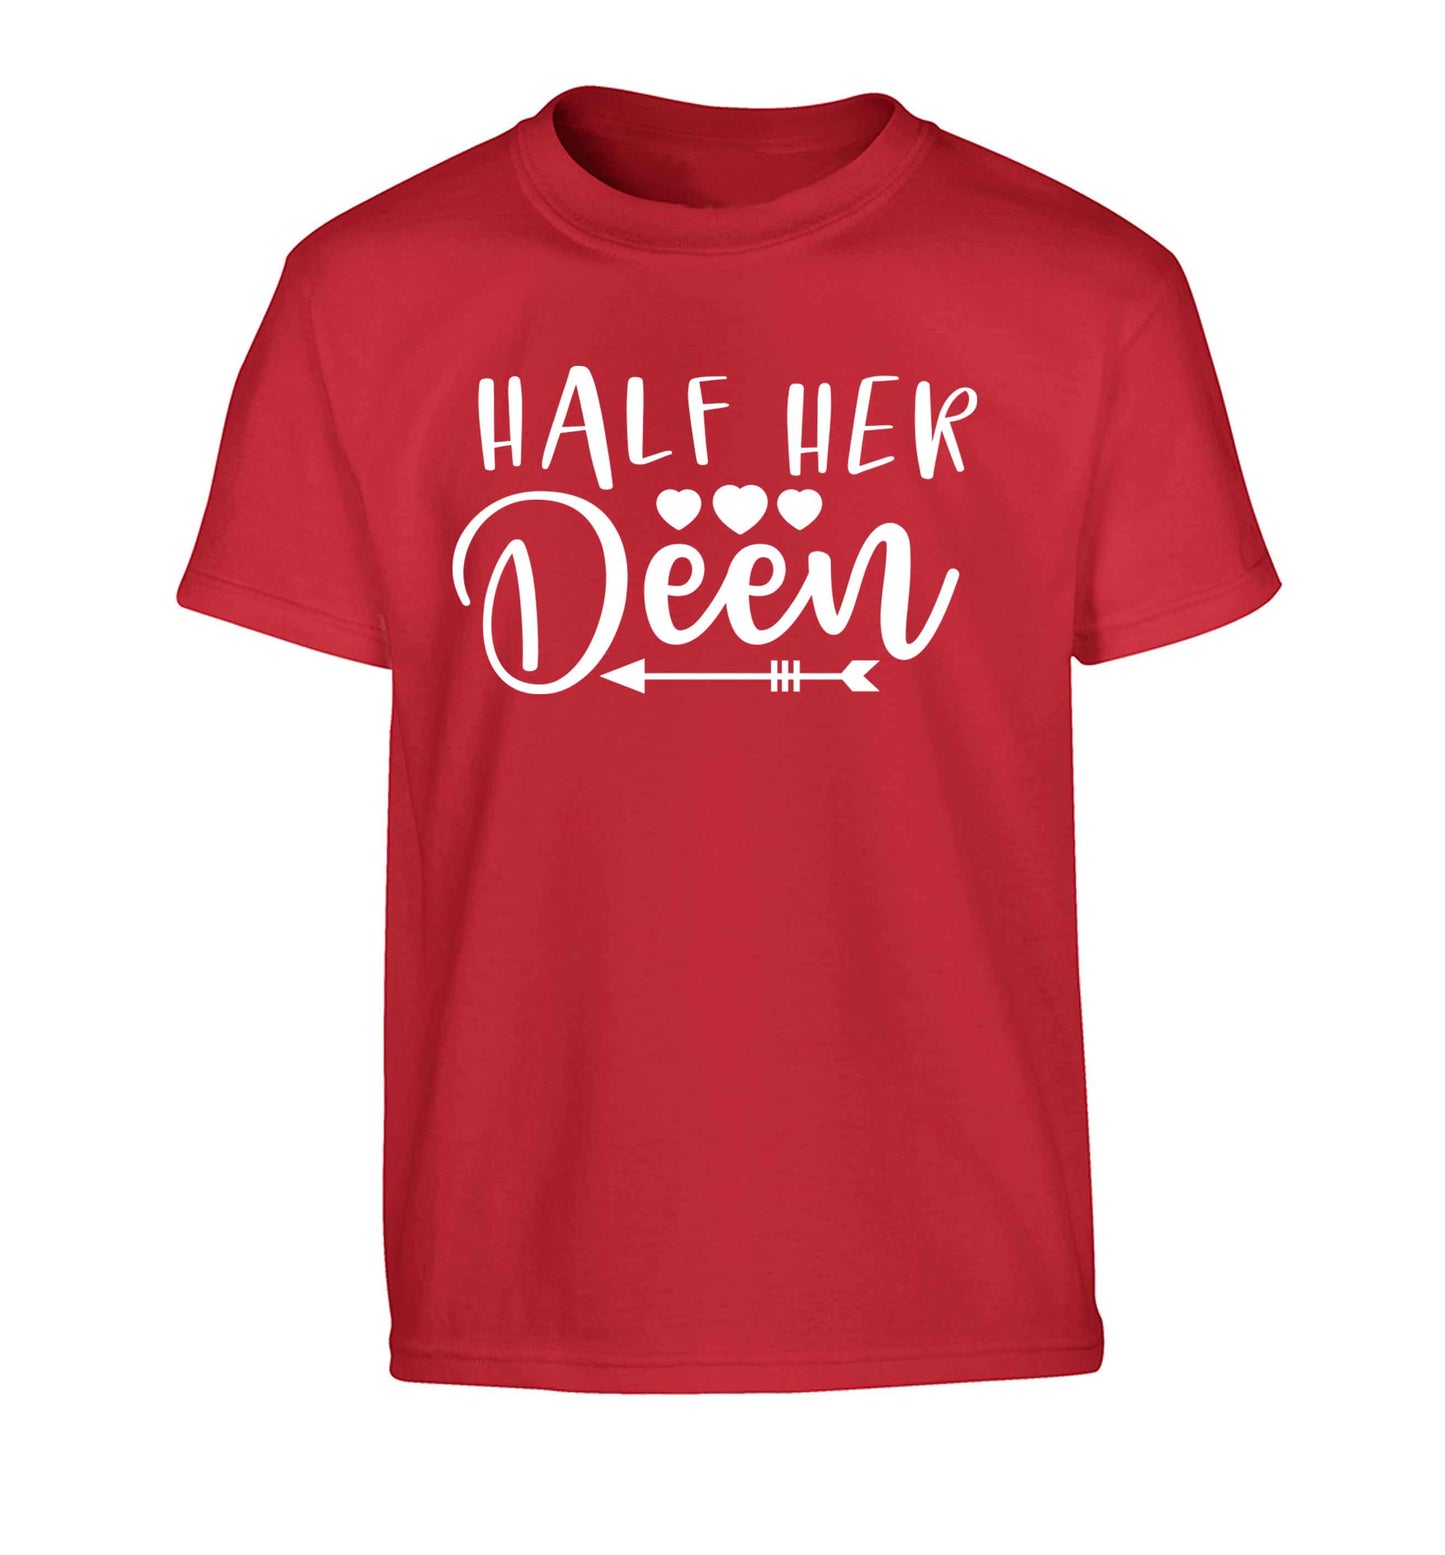 Half her deen Children's red Tshirt 12-13 Years